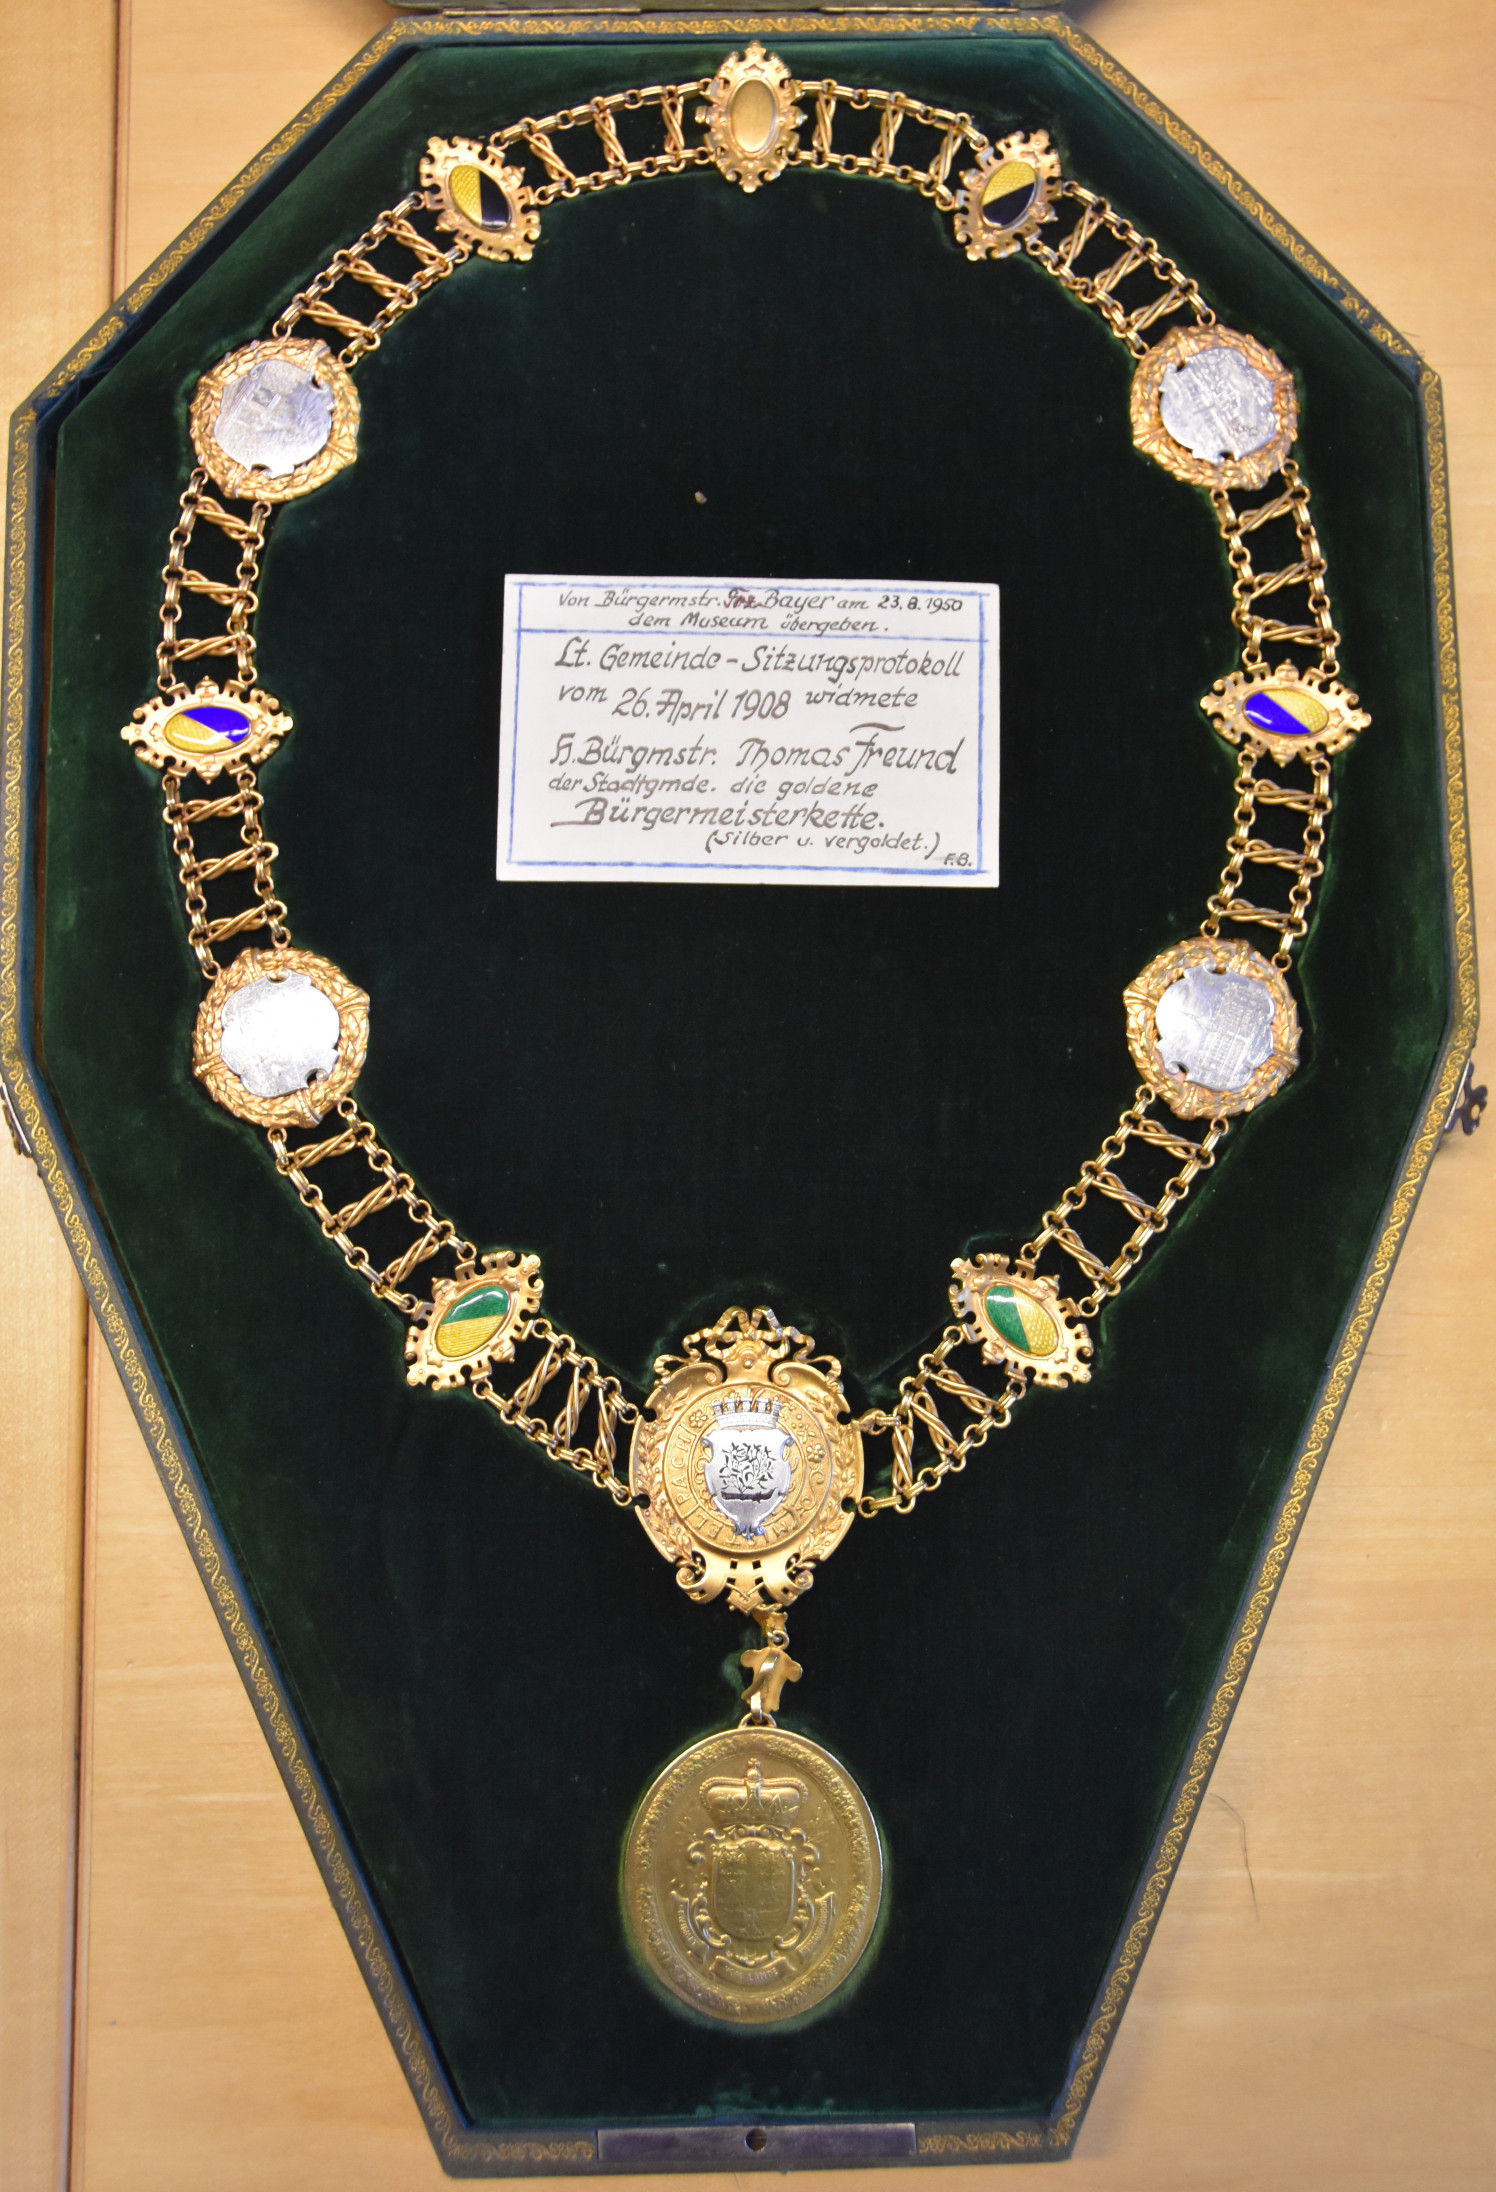 Die Bürgermeisterkette im Jahr 2019, nach der Überarbeitung Anfang der 2000er Jahre und die Rückseite der Bürgermeister-Medaille zeigend